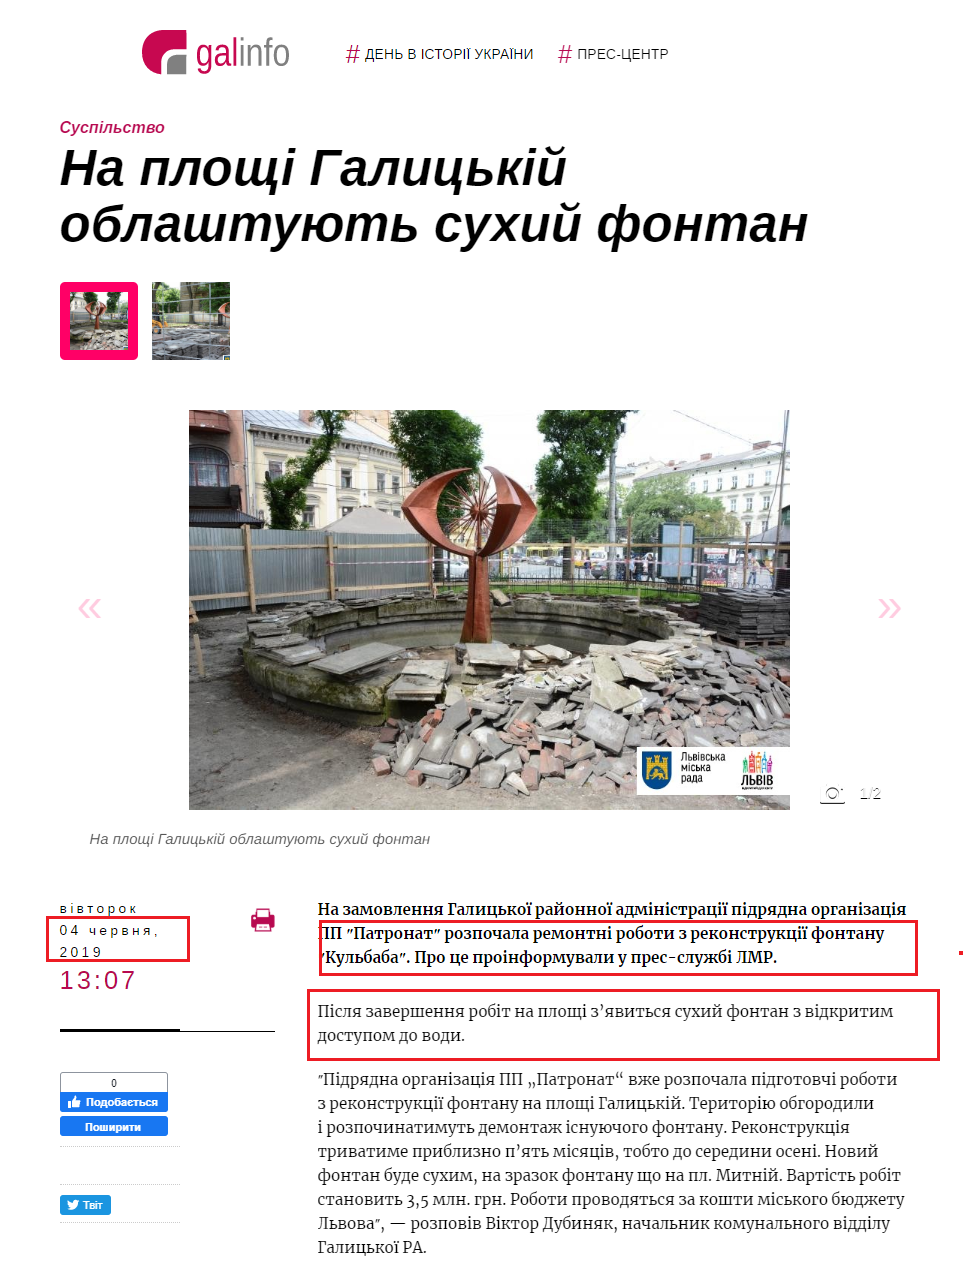 https://galinfo.com.ua/news/na_ploshchi_galytskiy_oblashtuyut_suhyy_fontan_317689.html